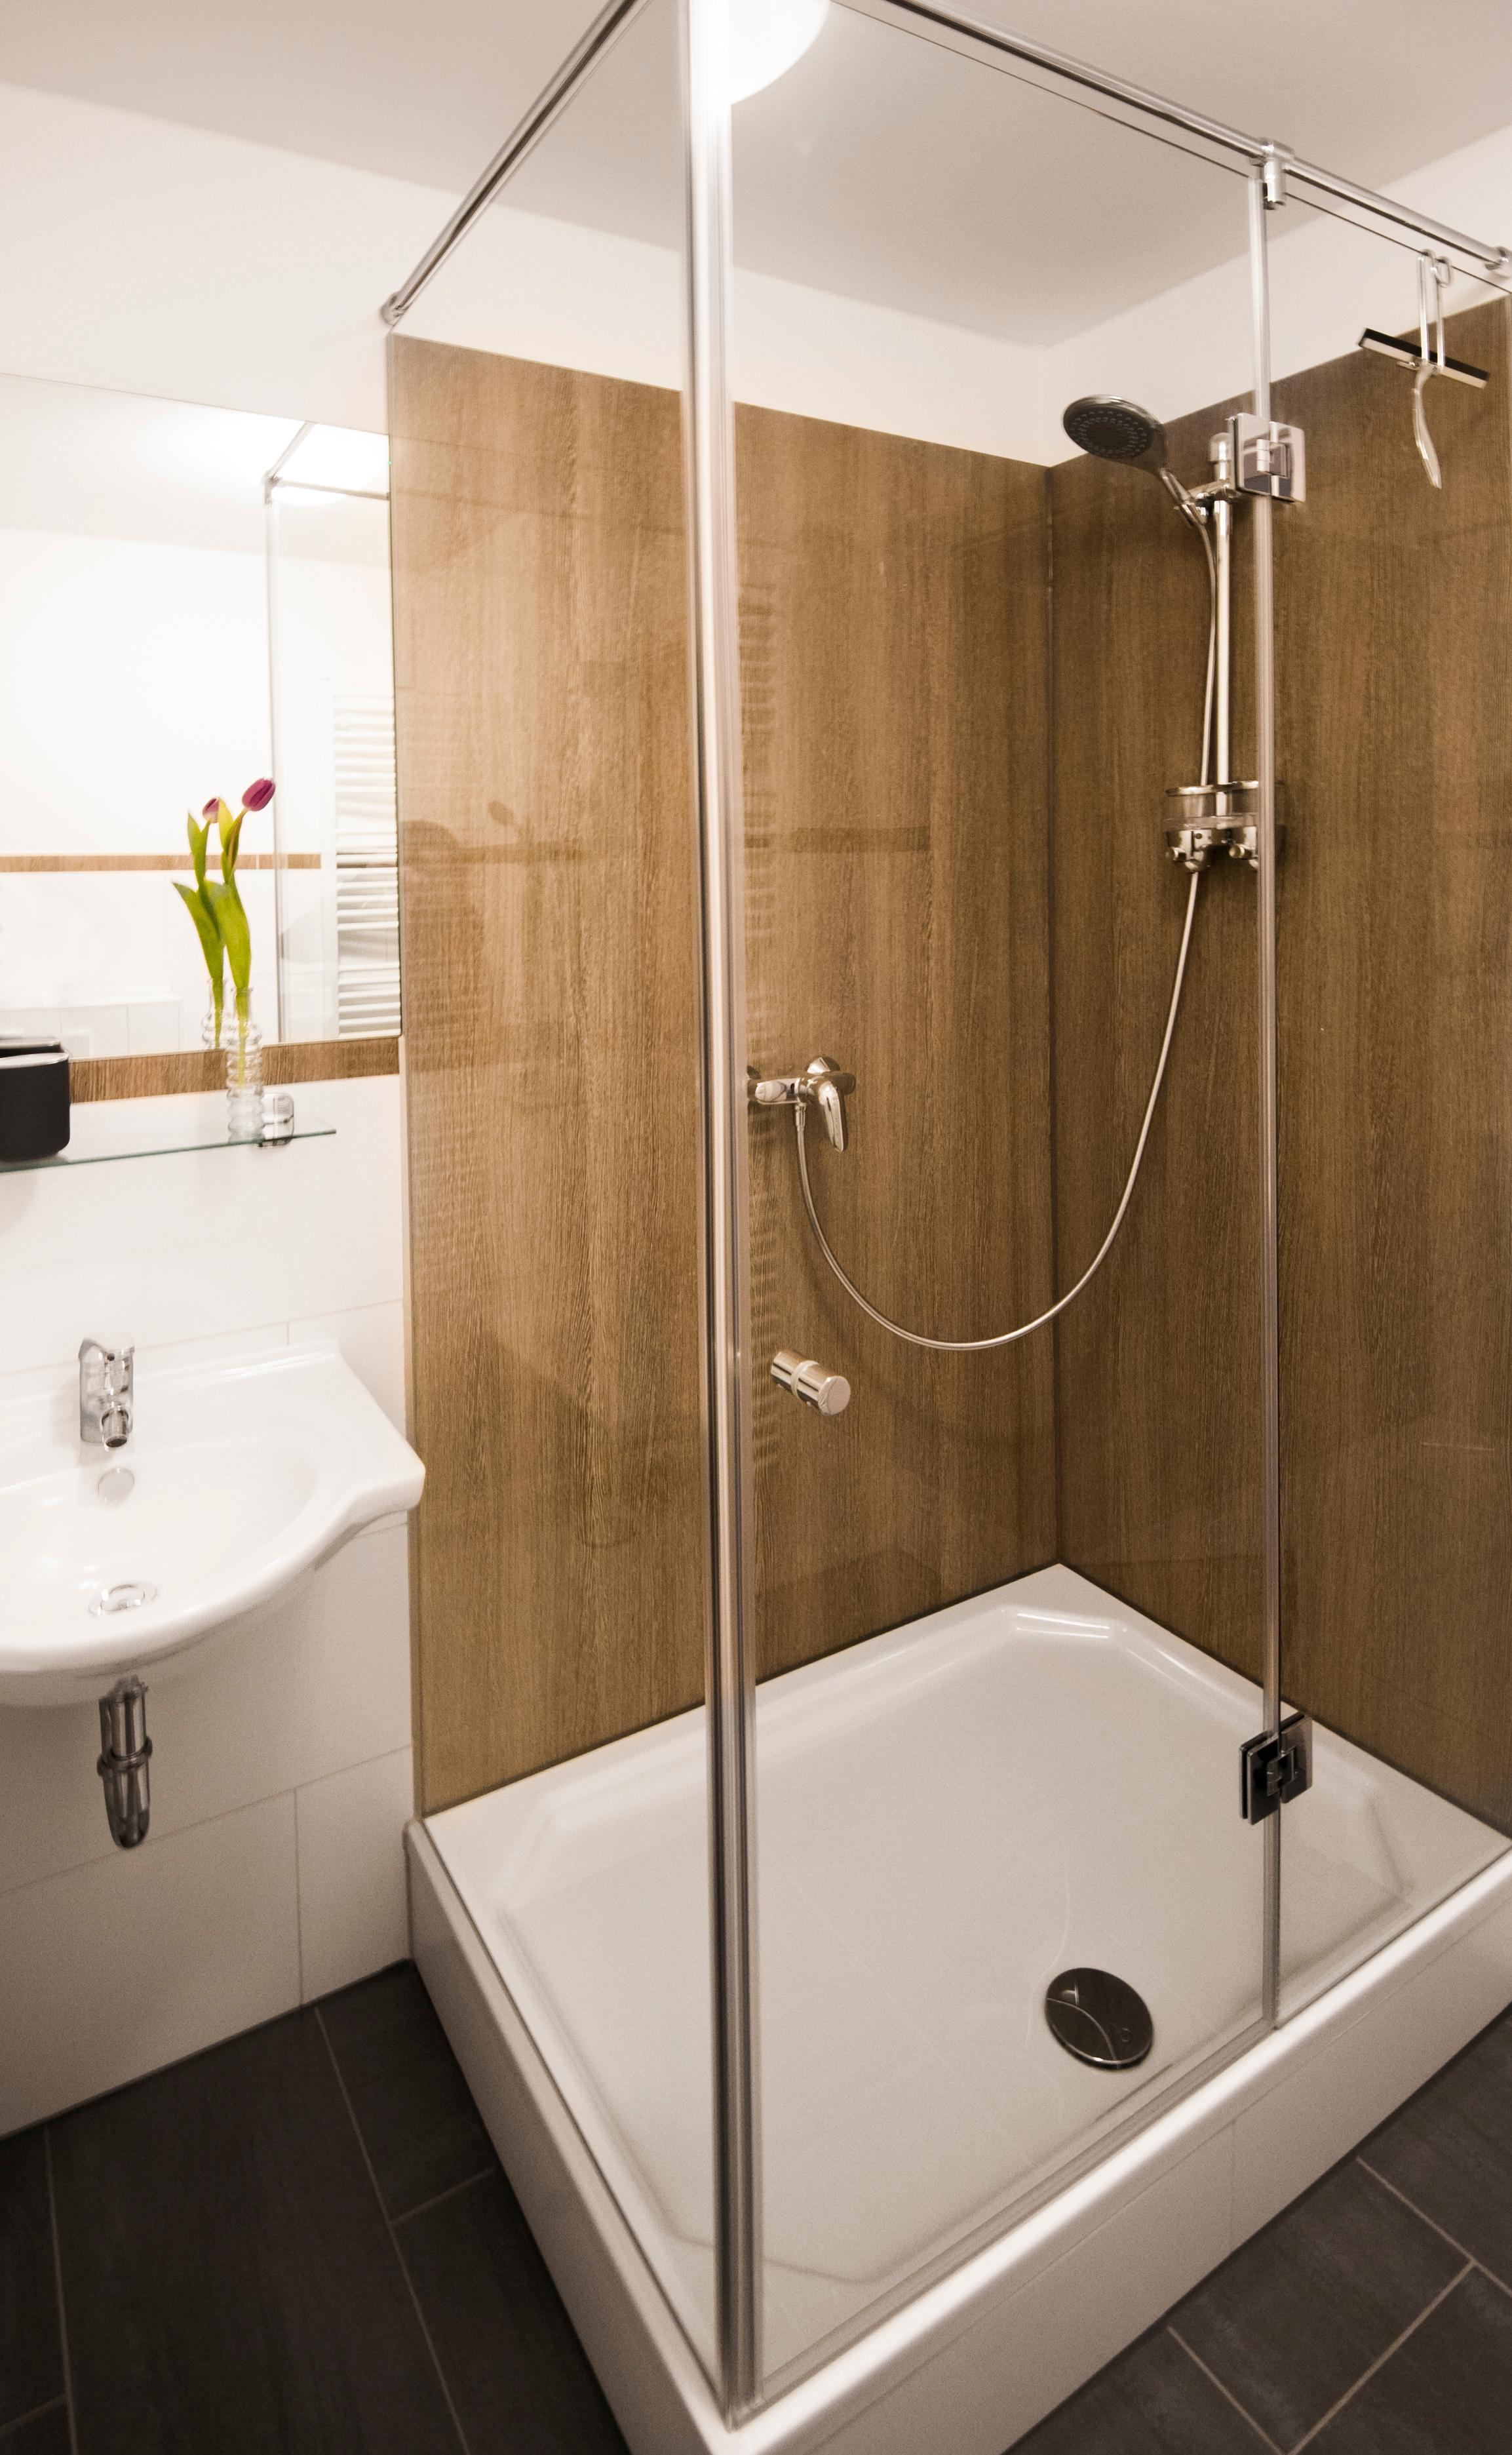 Glas Laminat Dusche mit Dekor "Wenge Sonoma" als Duschrückwand #badezimmer #laminat #duschrückwand ©Layerprint.de